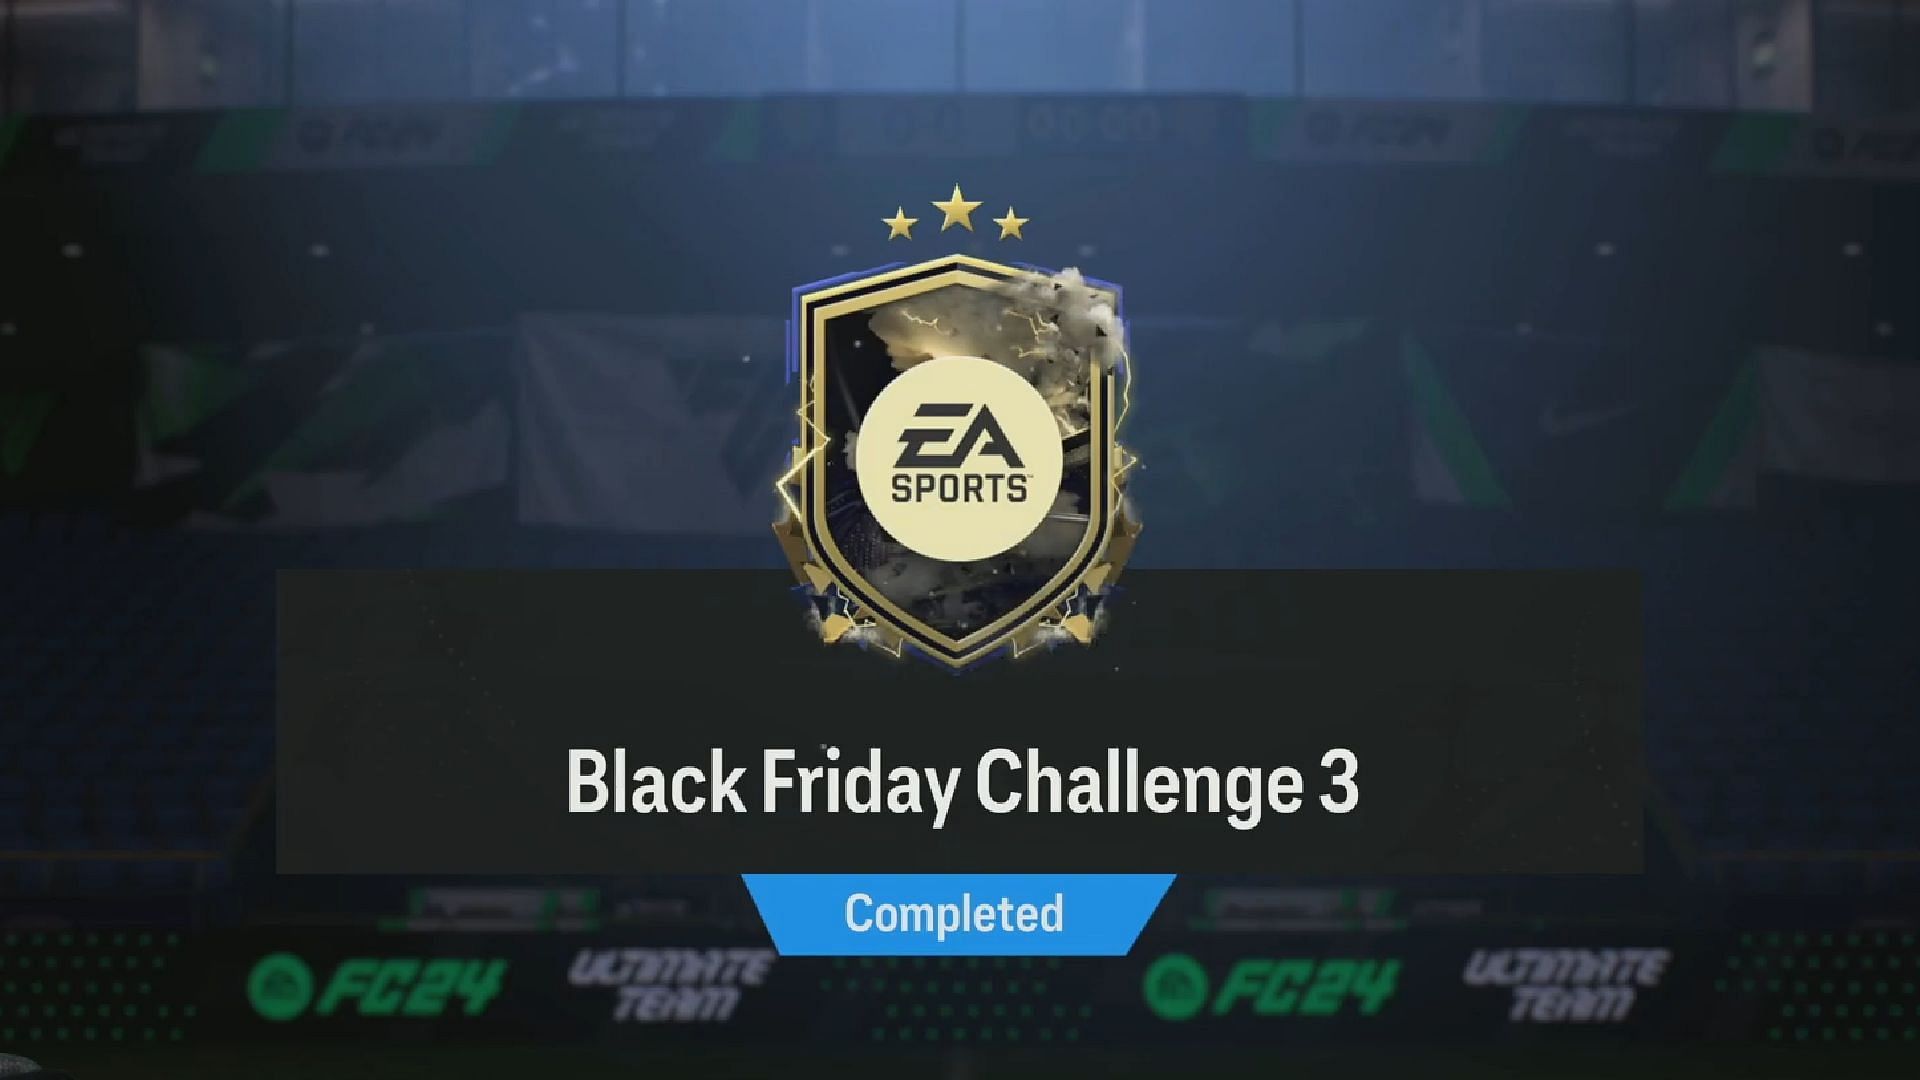 Black Friday Challenge 3 SBC guide (Image via EA Sports)